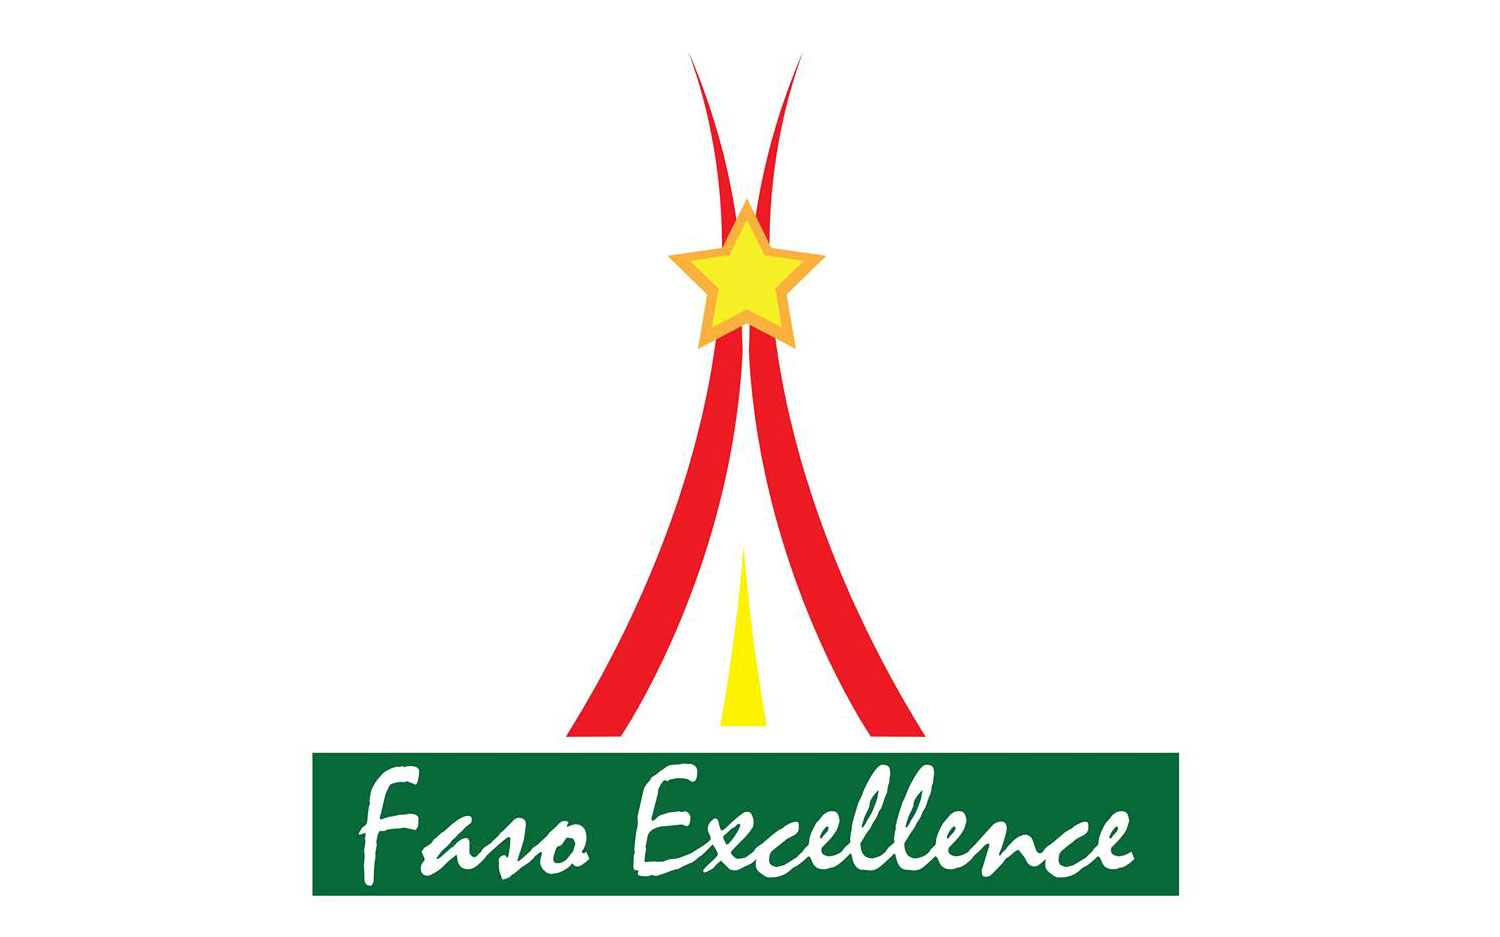 Faso Excellence logo